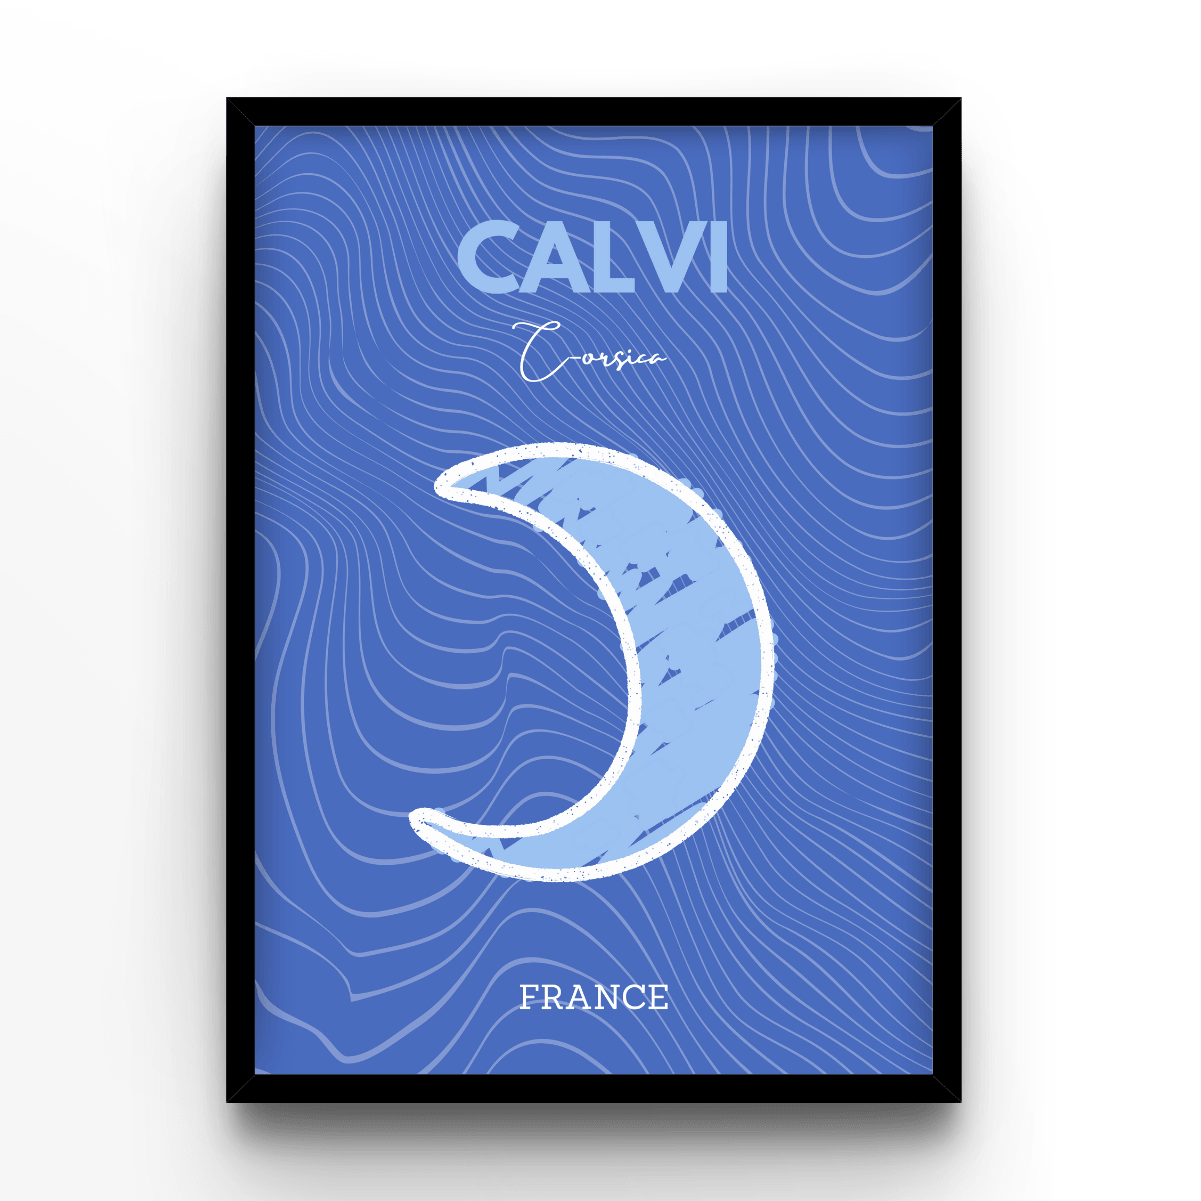 Calvi - A4, A3, A2 Posters Base - Poster Print Shop / Art Prints / PostersBase